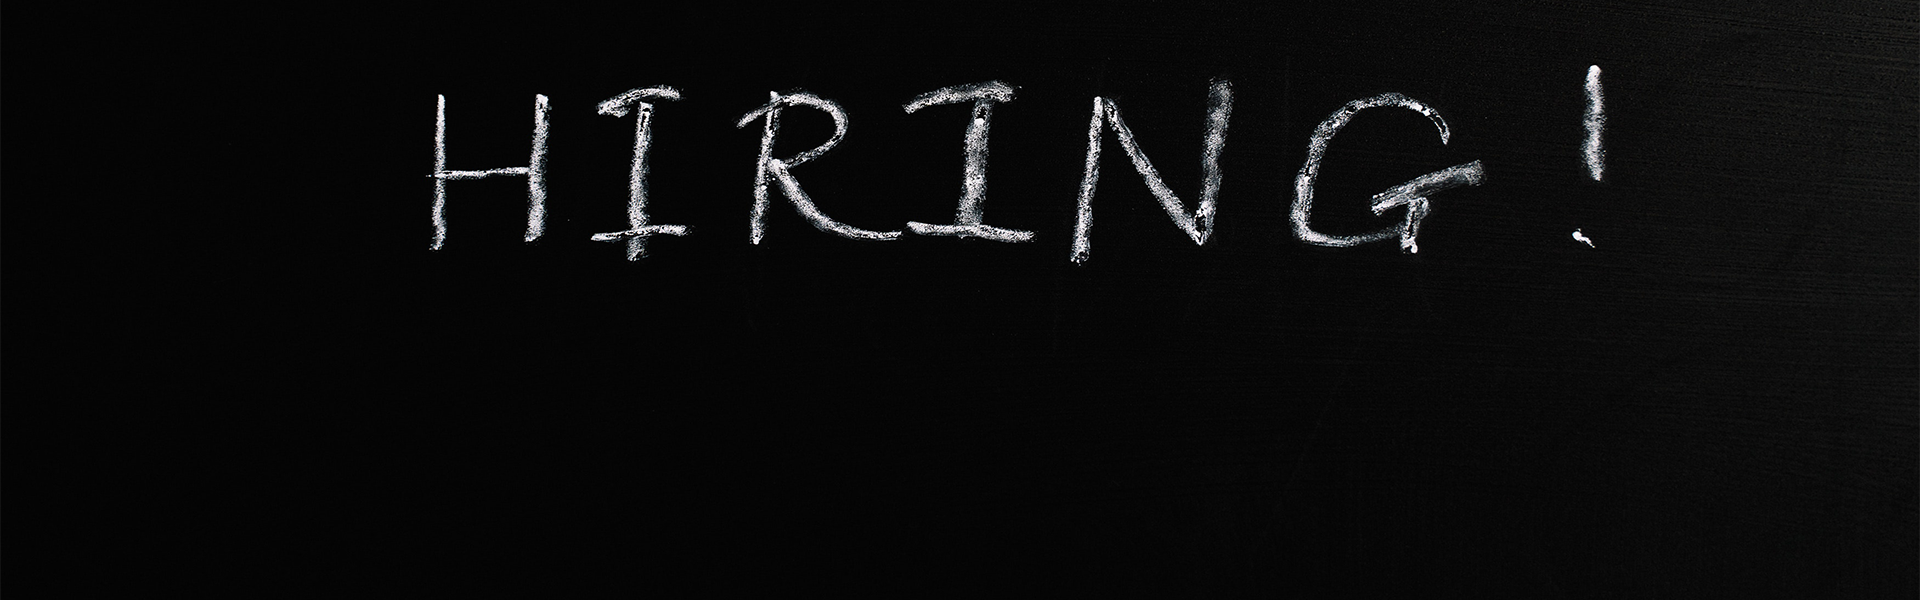 The word hiring written in chalk on a chalkboard